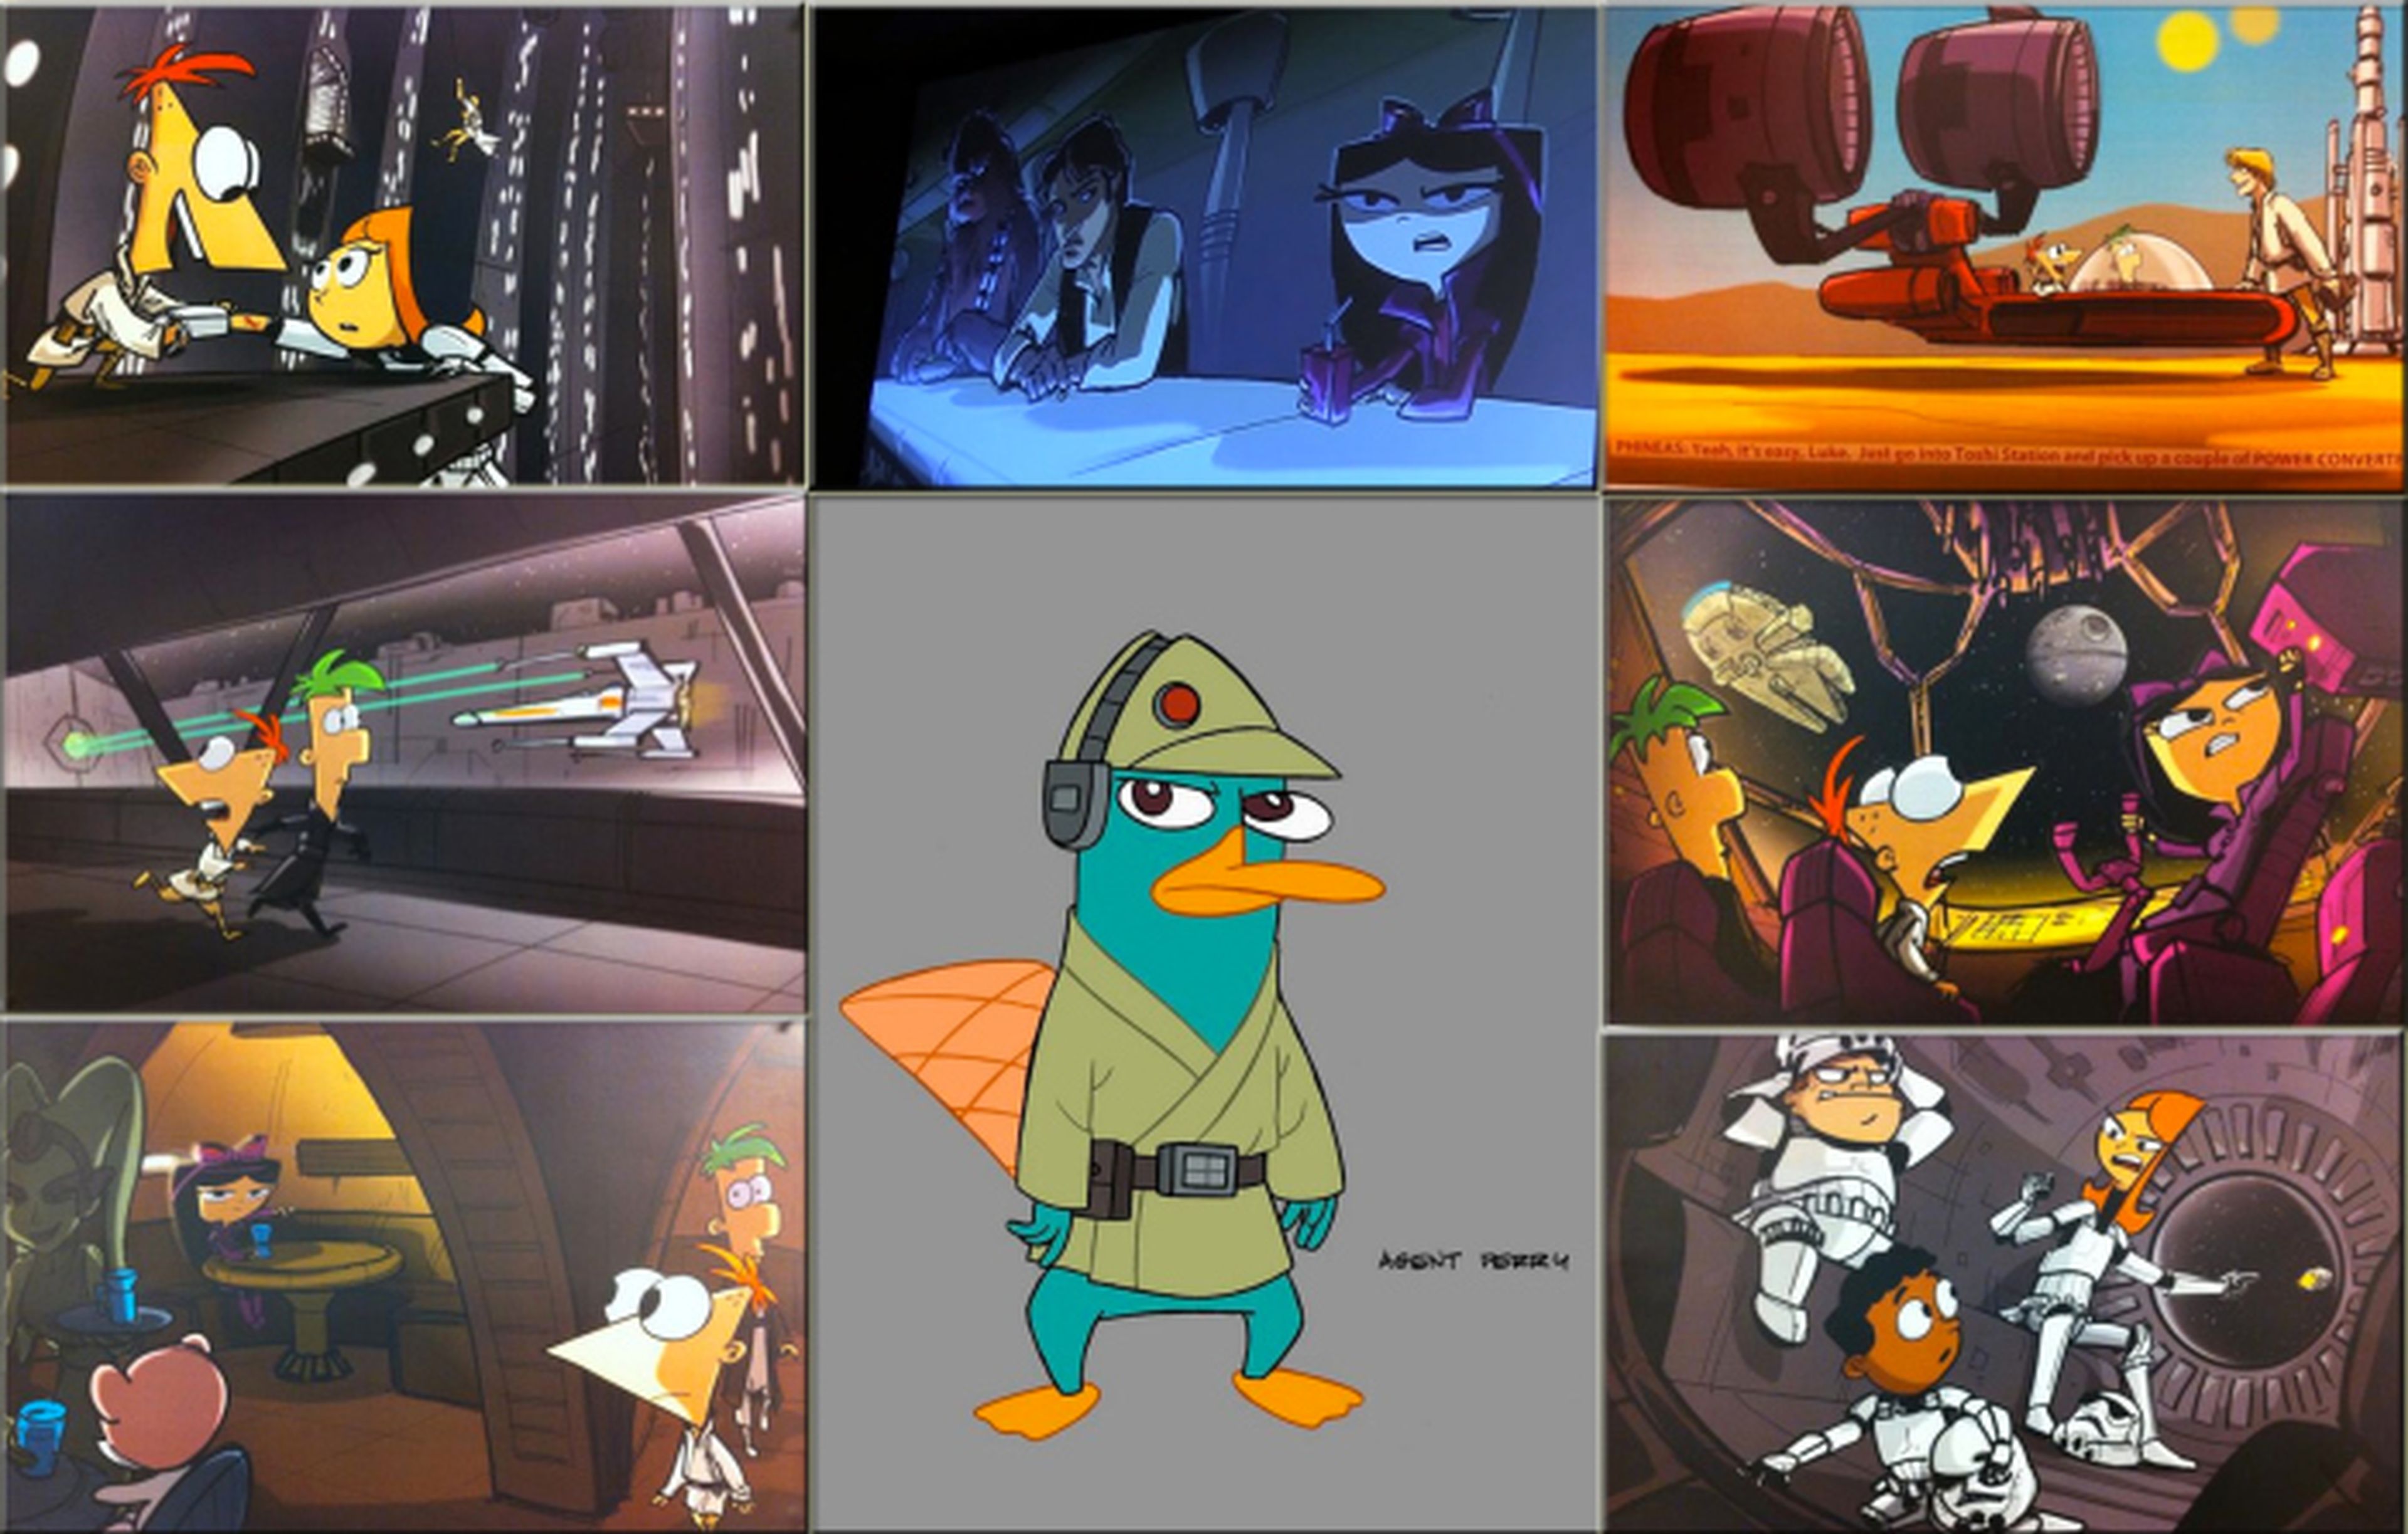 Concept arts de Phineas y Ferb/Star Wars, revelados